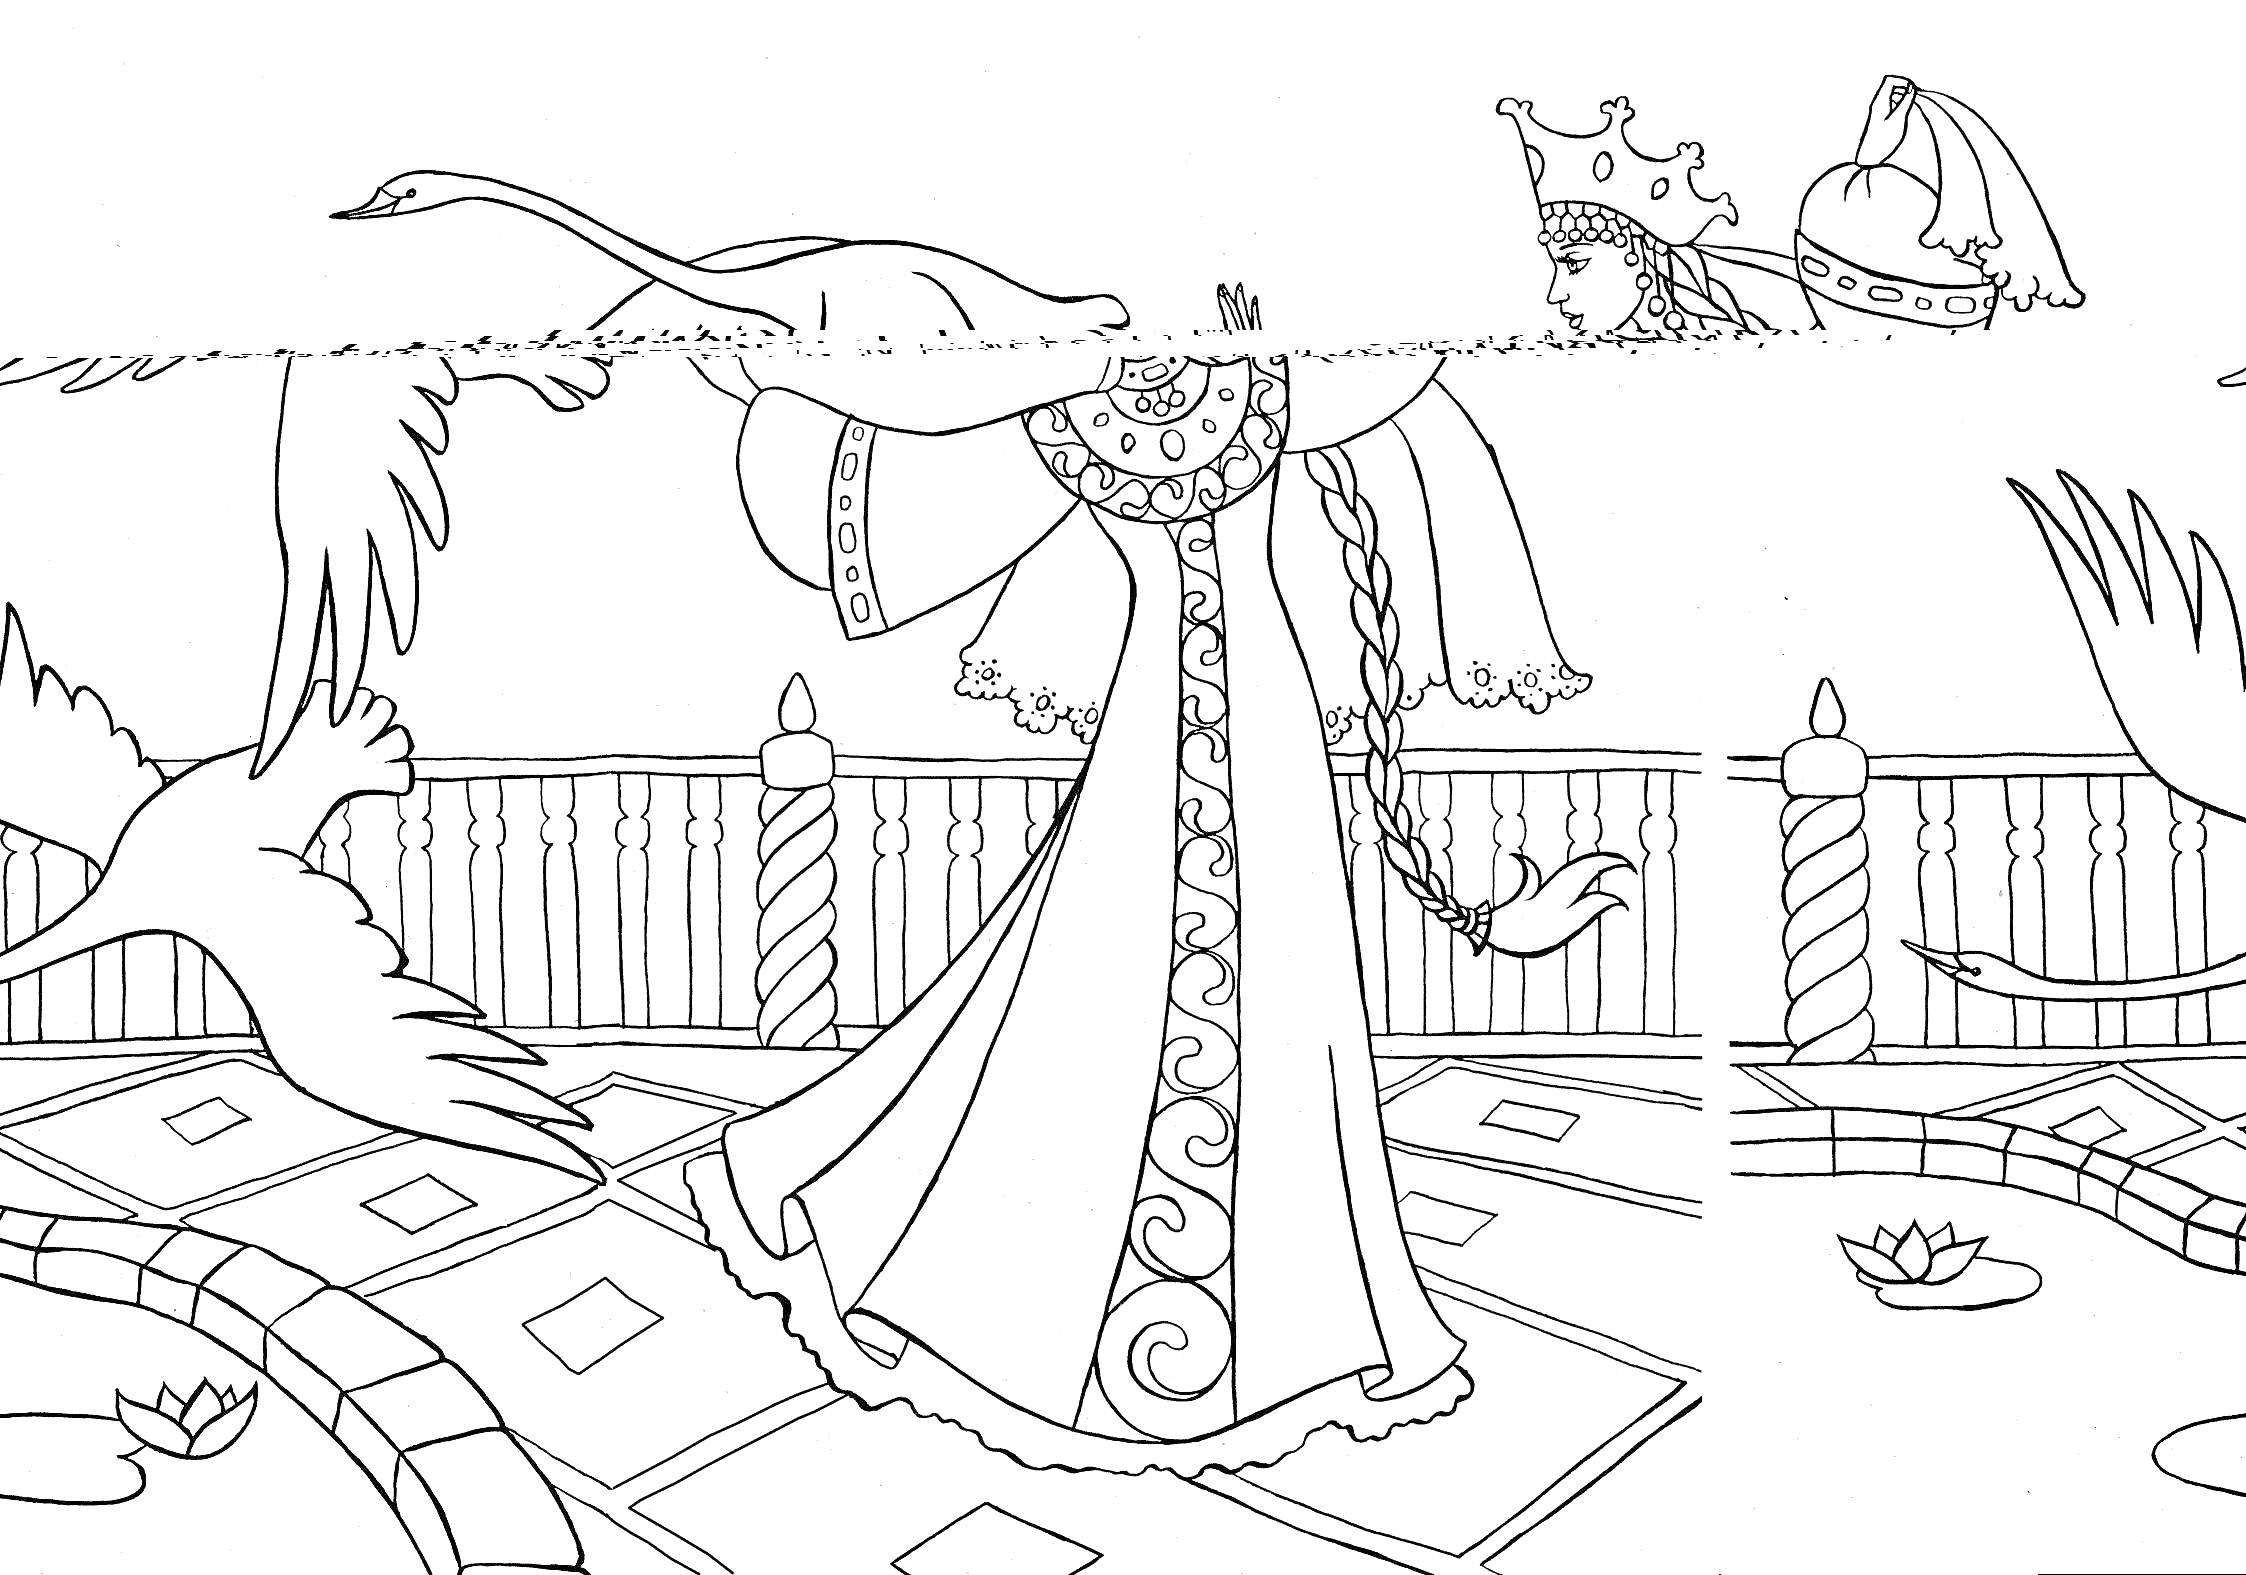 Царевна на балконе с лебедями и коронами